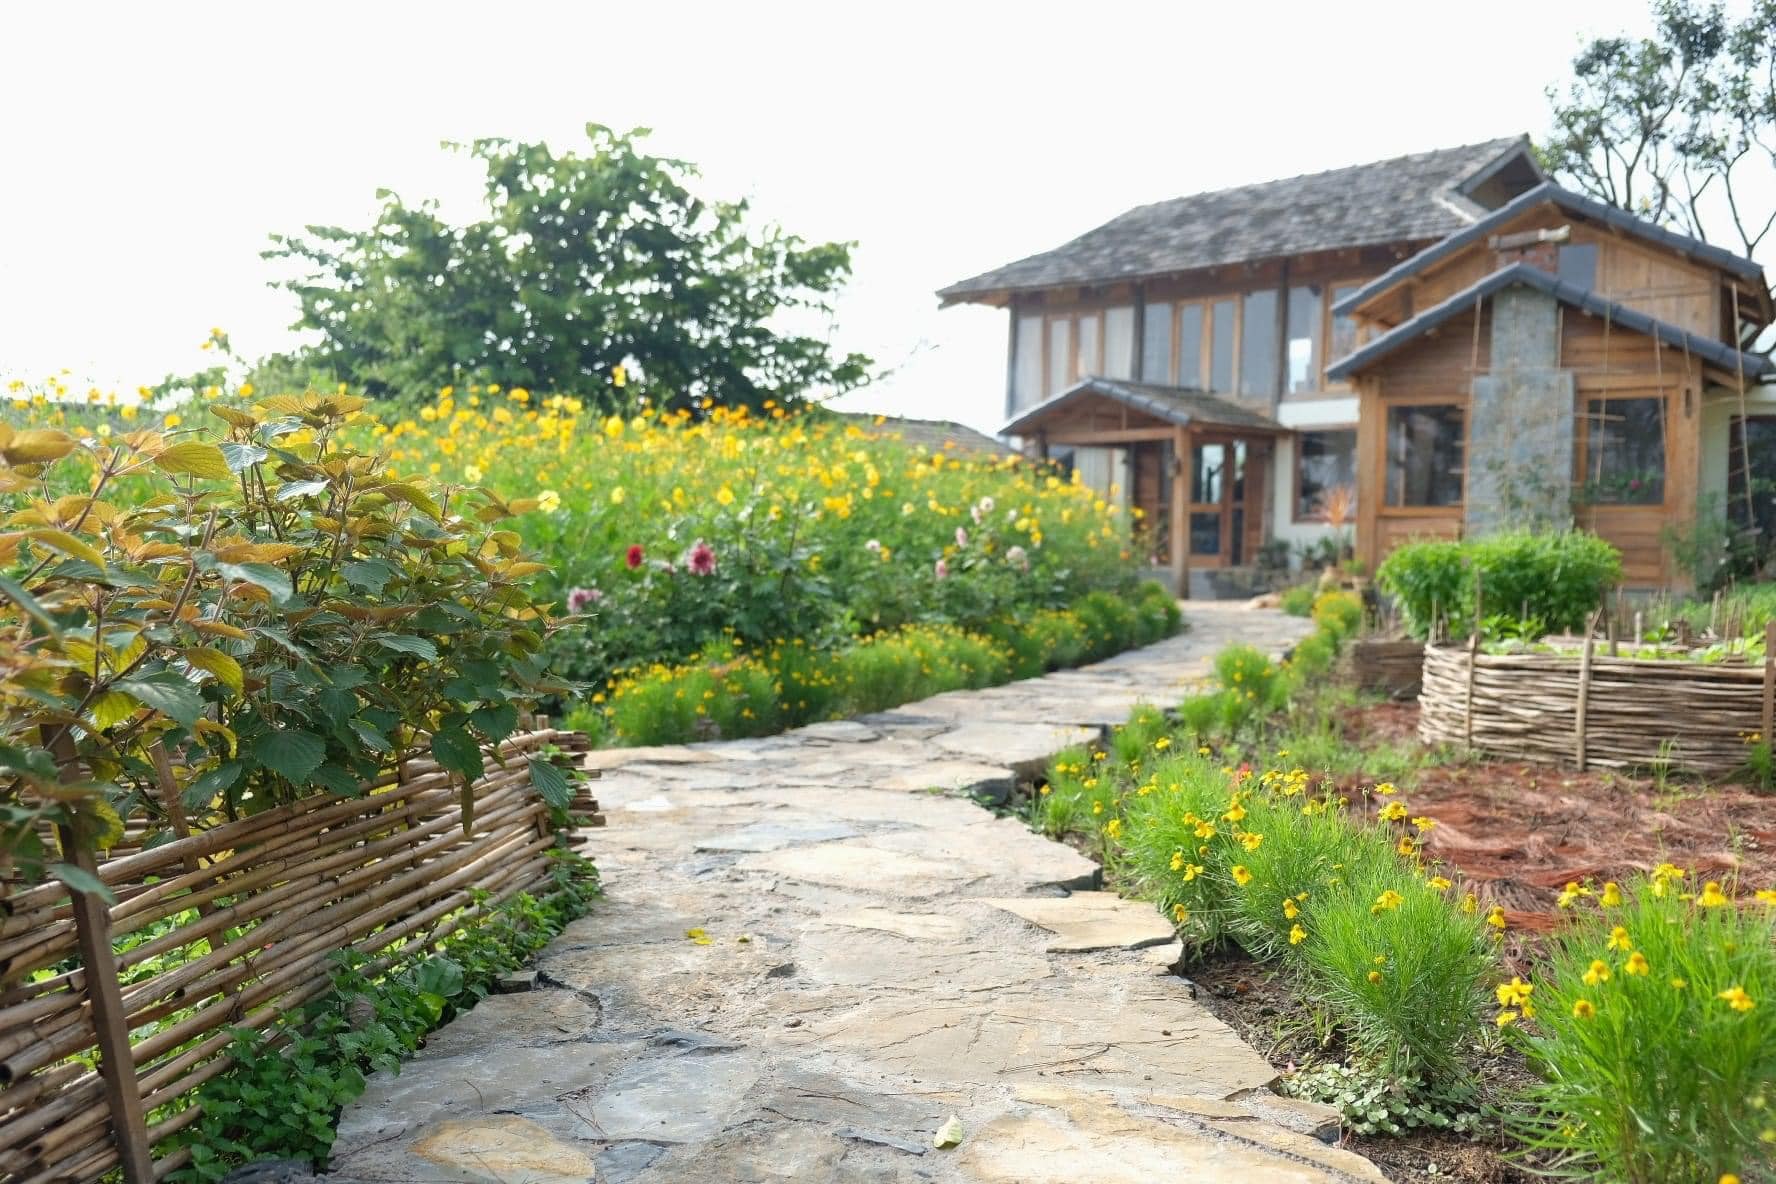 Ngôi nhà đẹp bằng gỗ bình yên, phủ đầy hoa trên cao nguyên Mộc Châu  - Ảnh 2.